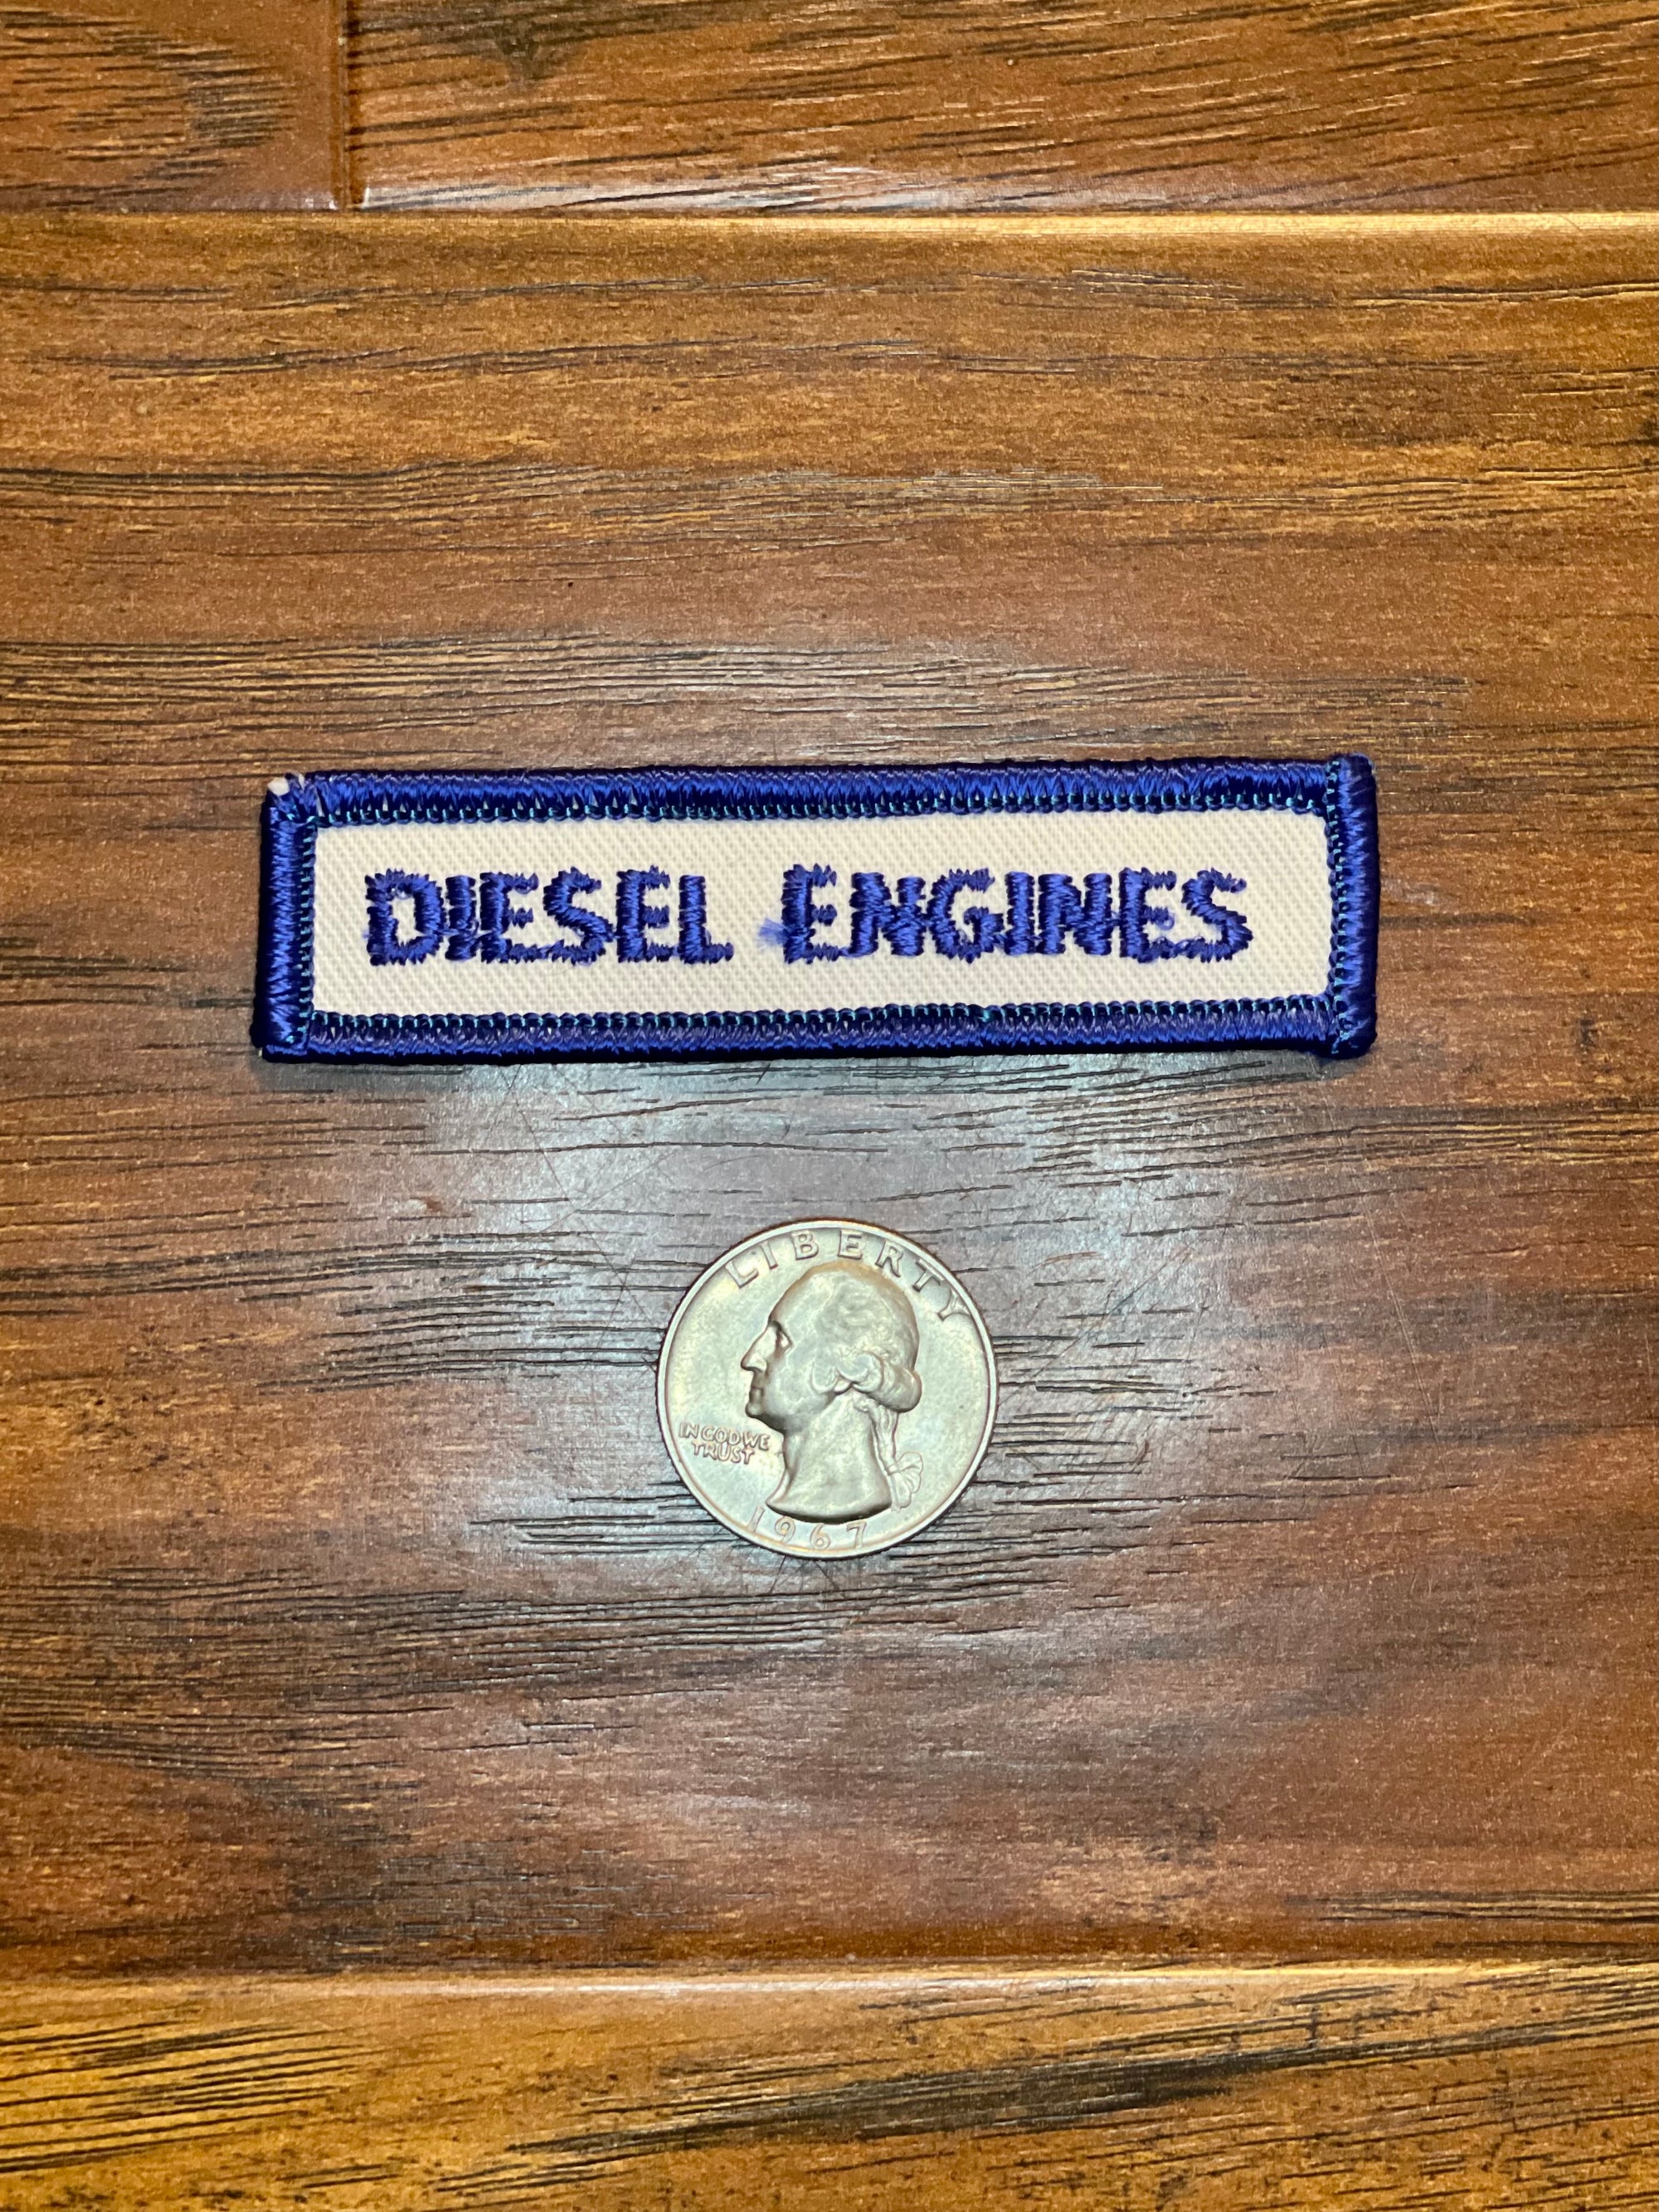 Vintage Diesel Engines